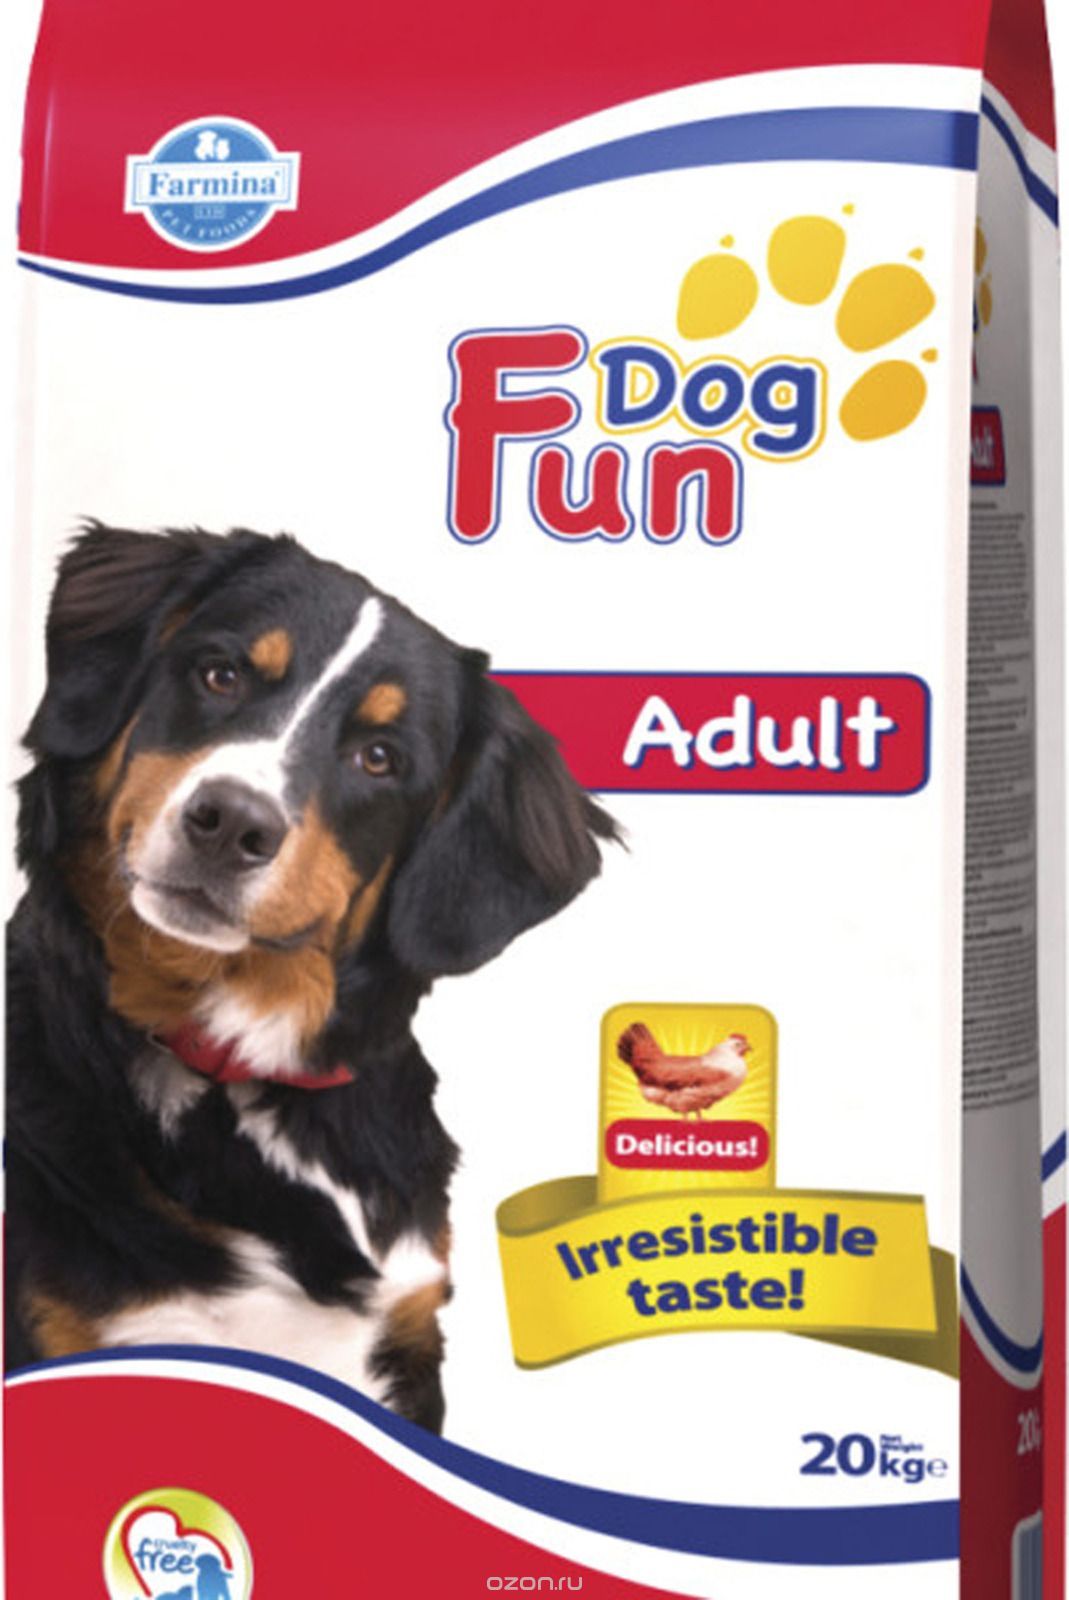   Farmina Fun Dog,  ,  , 10 